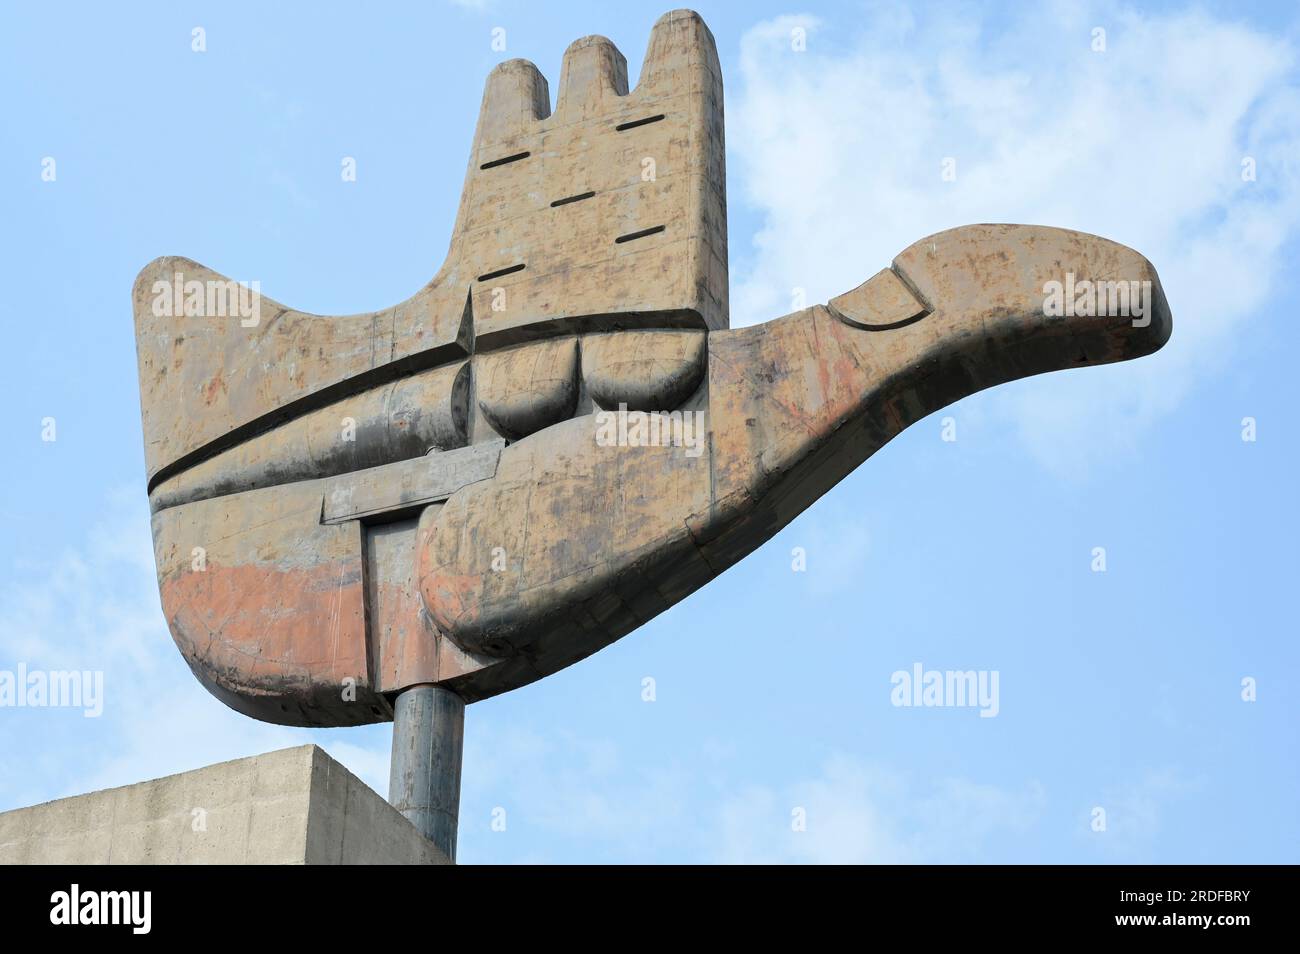 INDIEN, Chandigarh, der Generalplan der Stadt, unterteilt in Sektoren, wurde vom schweizer-französischen Architekten Le Corbusier in den 1950 Jahren erstellt, Sektor 1 Capitol-Komplex, Metall- und Betondenkmal die von Le Corbusier entworfene offene Hand symbolisiert "die Hand zu geben und die Hand zu nehmen; Frieden und Wohlstand und die Einheit der Menschheit" Stockfoto